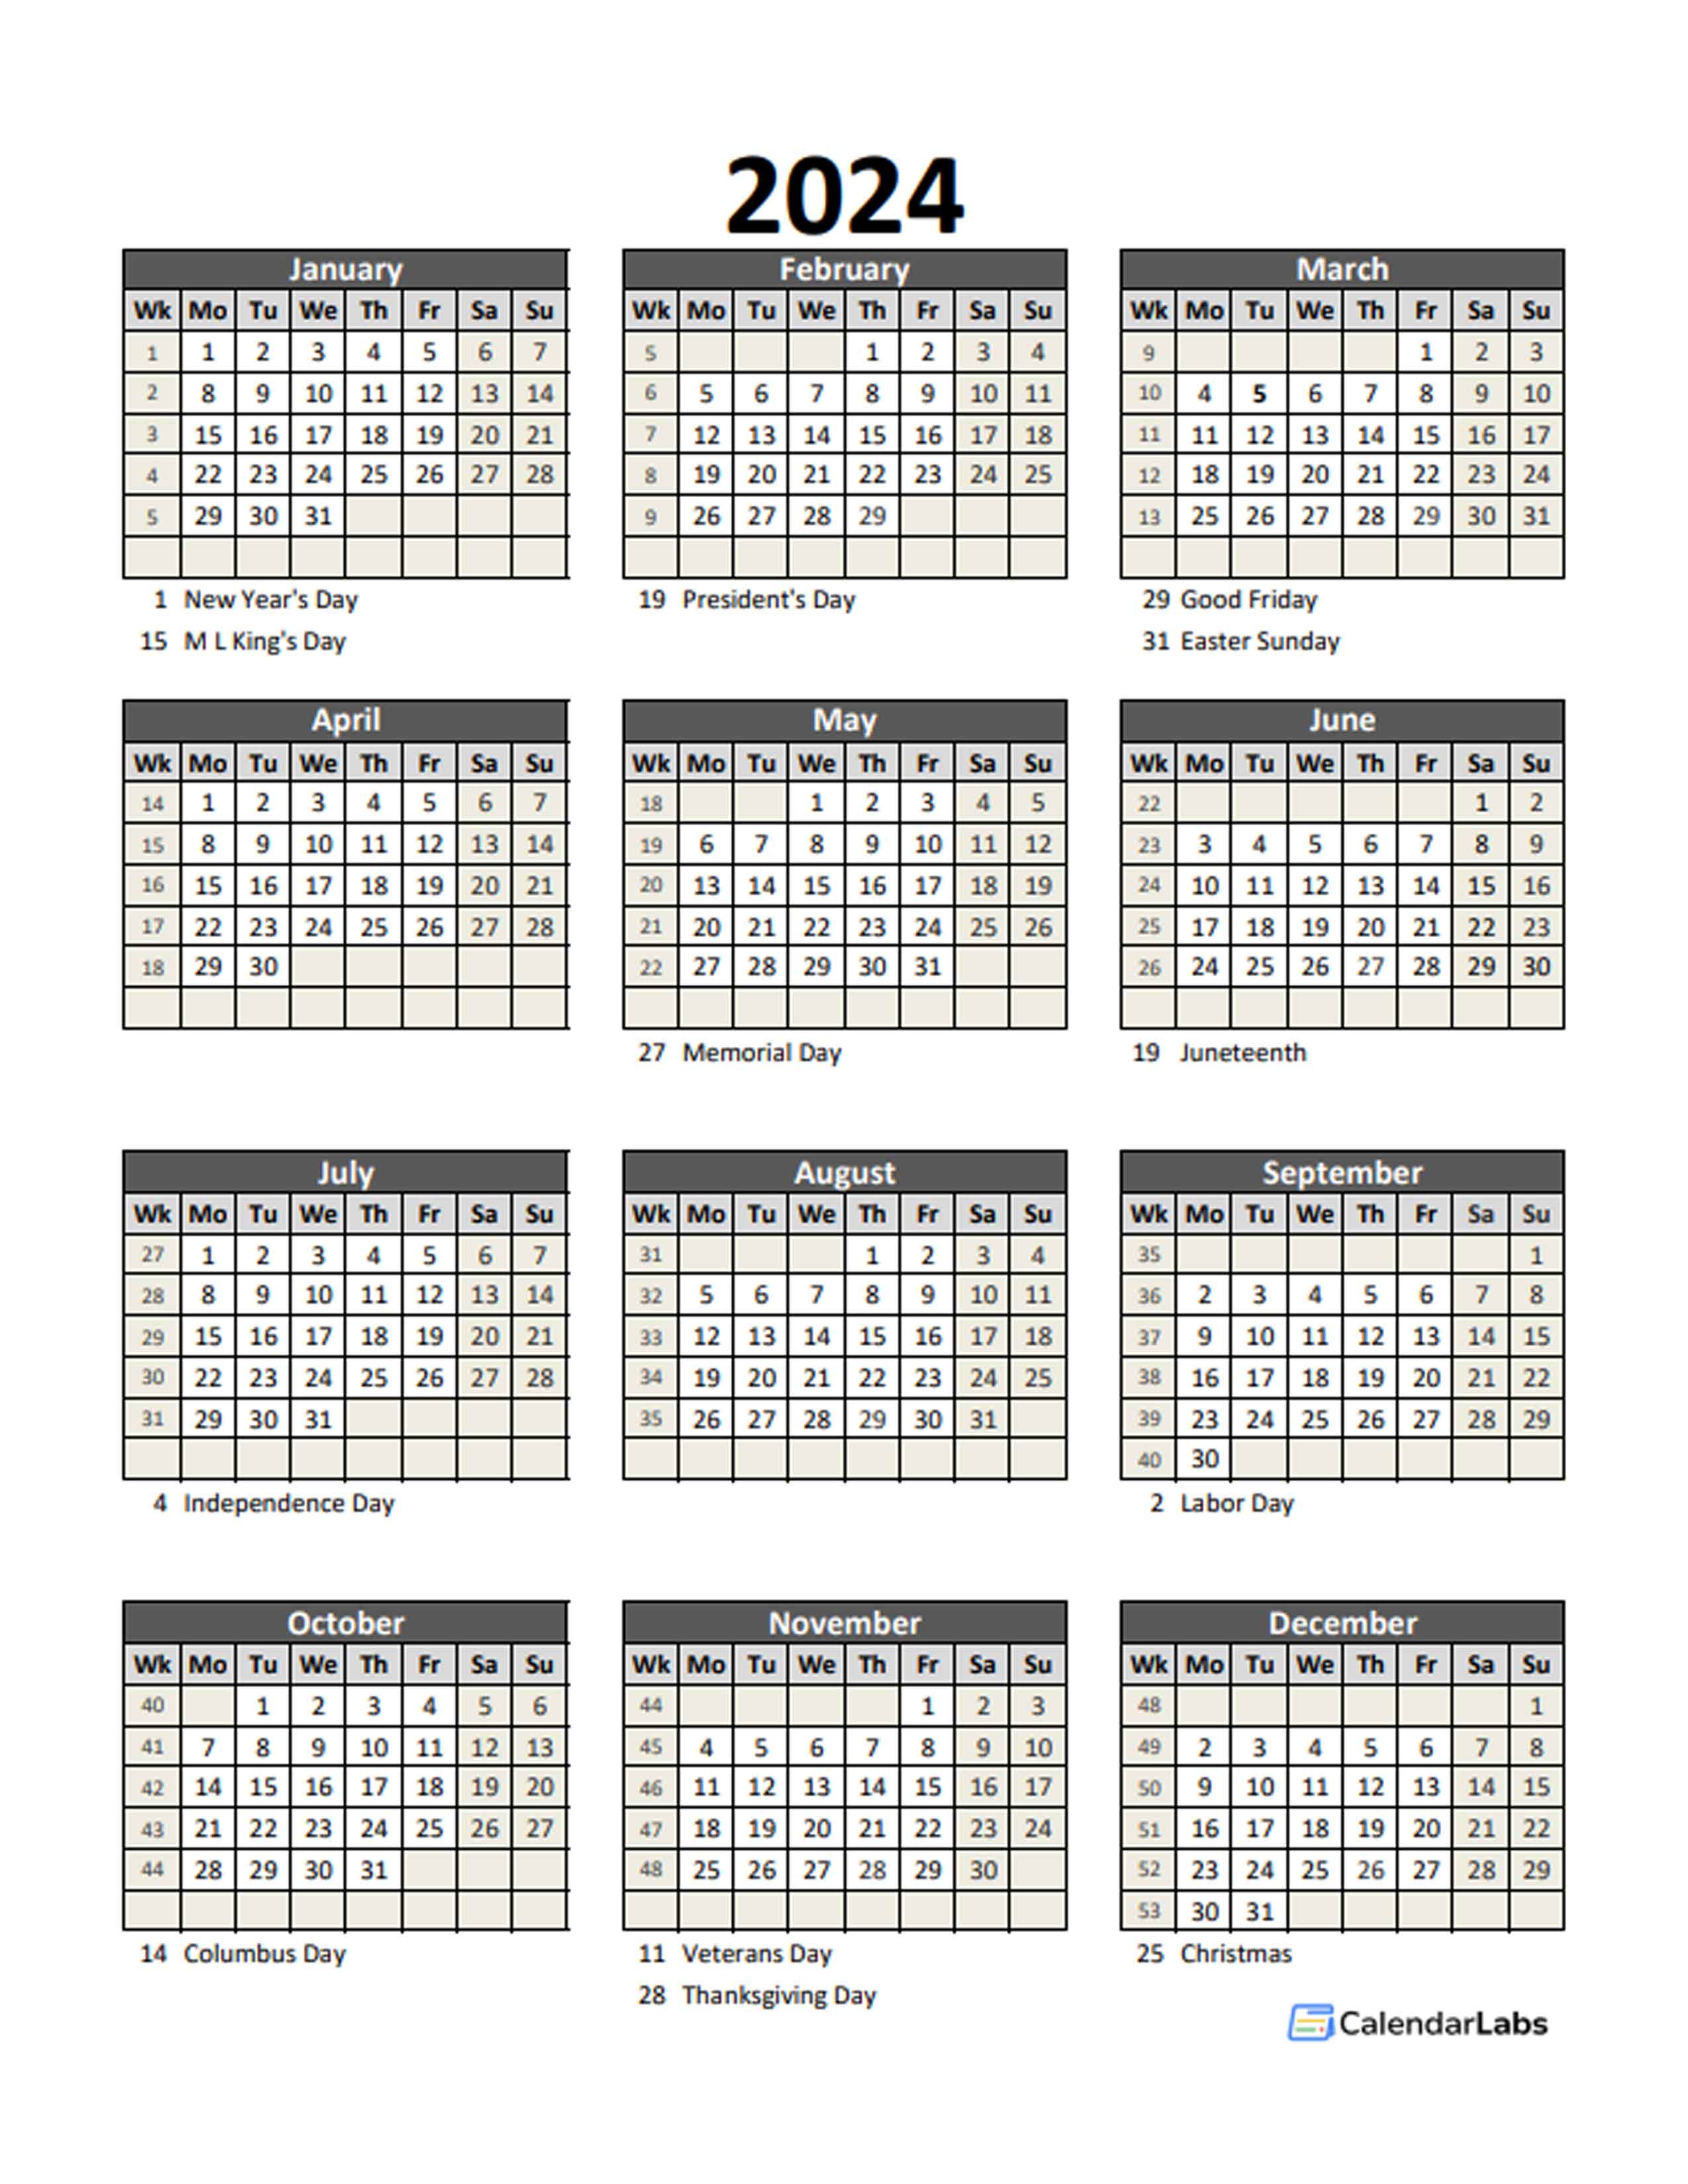 Payroll Calendar 2024